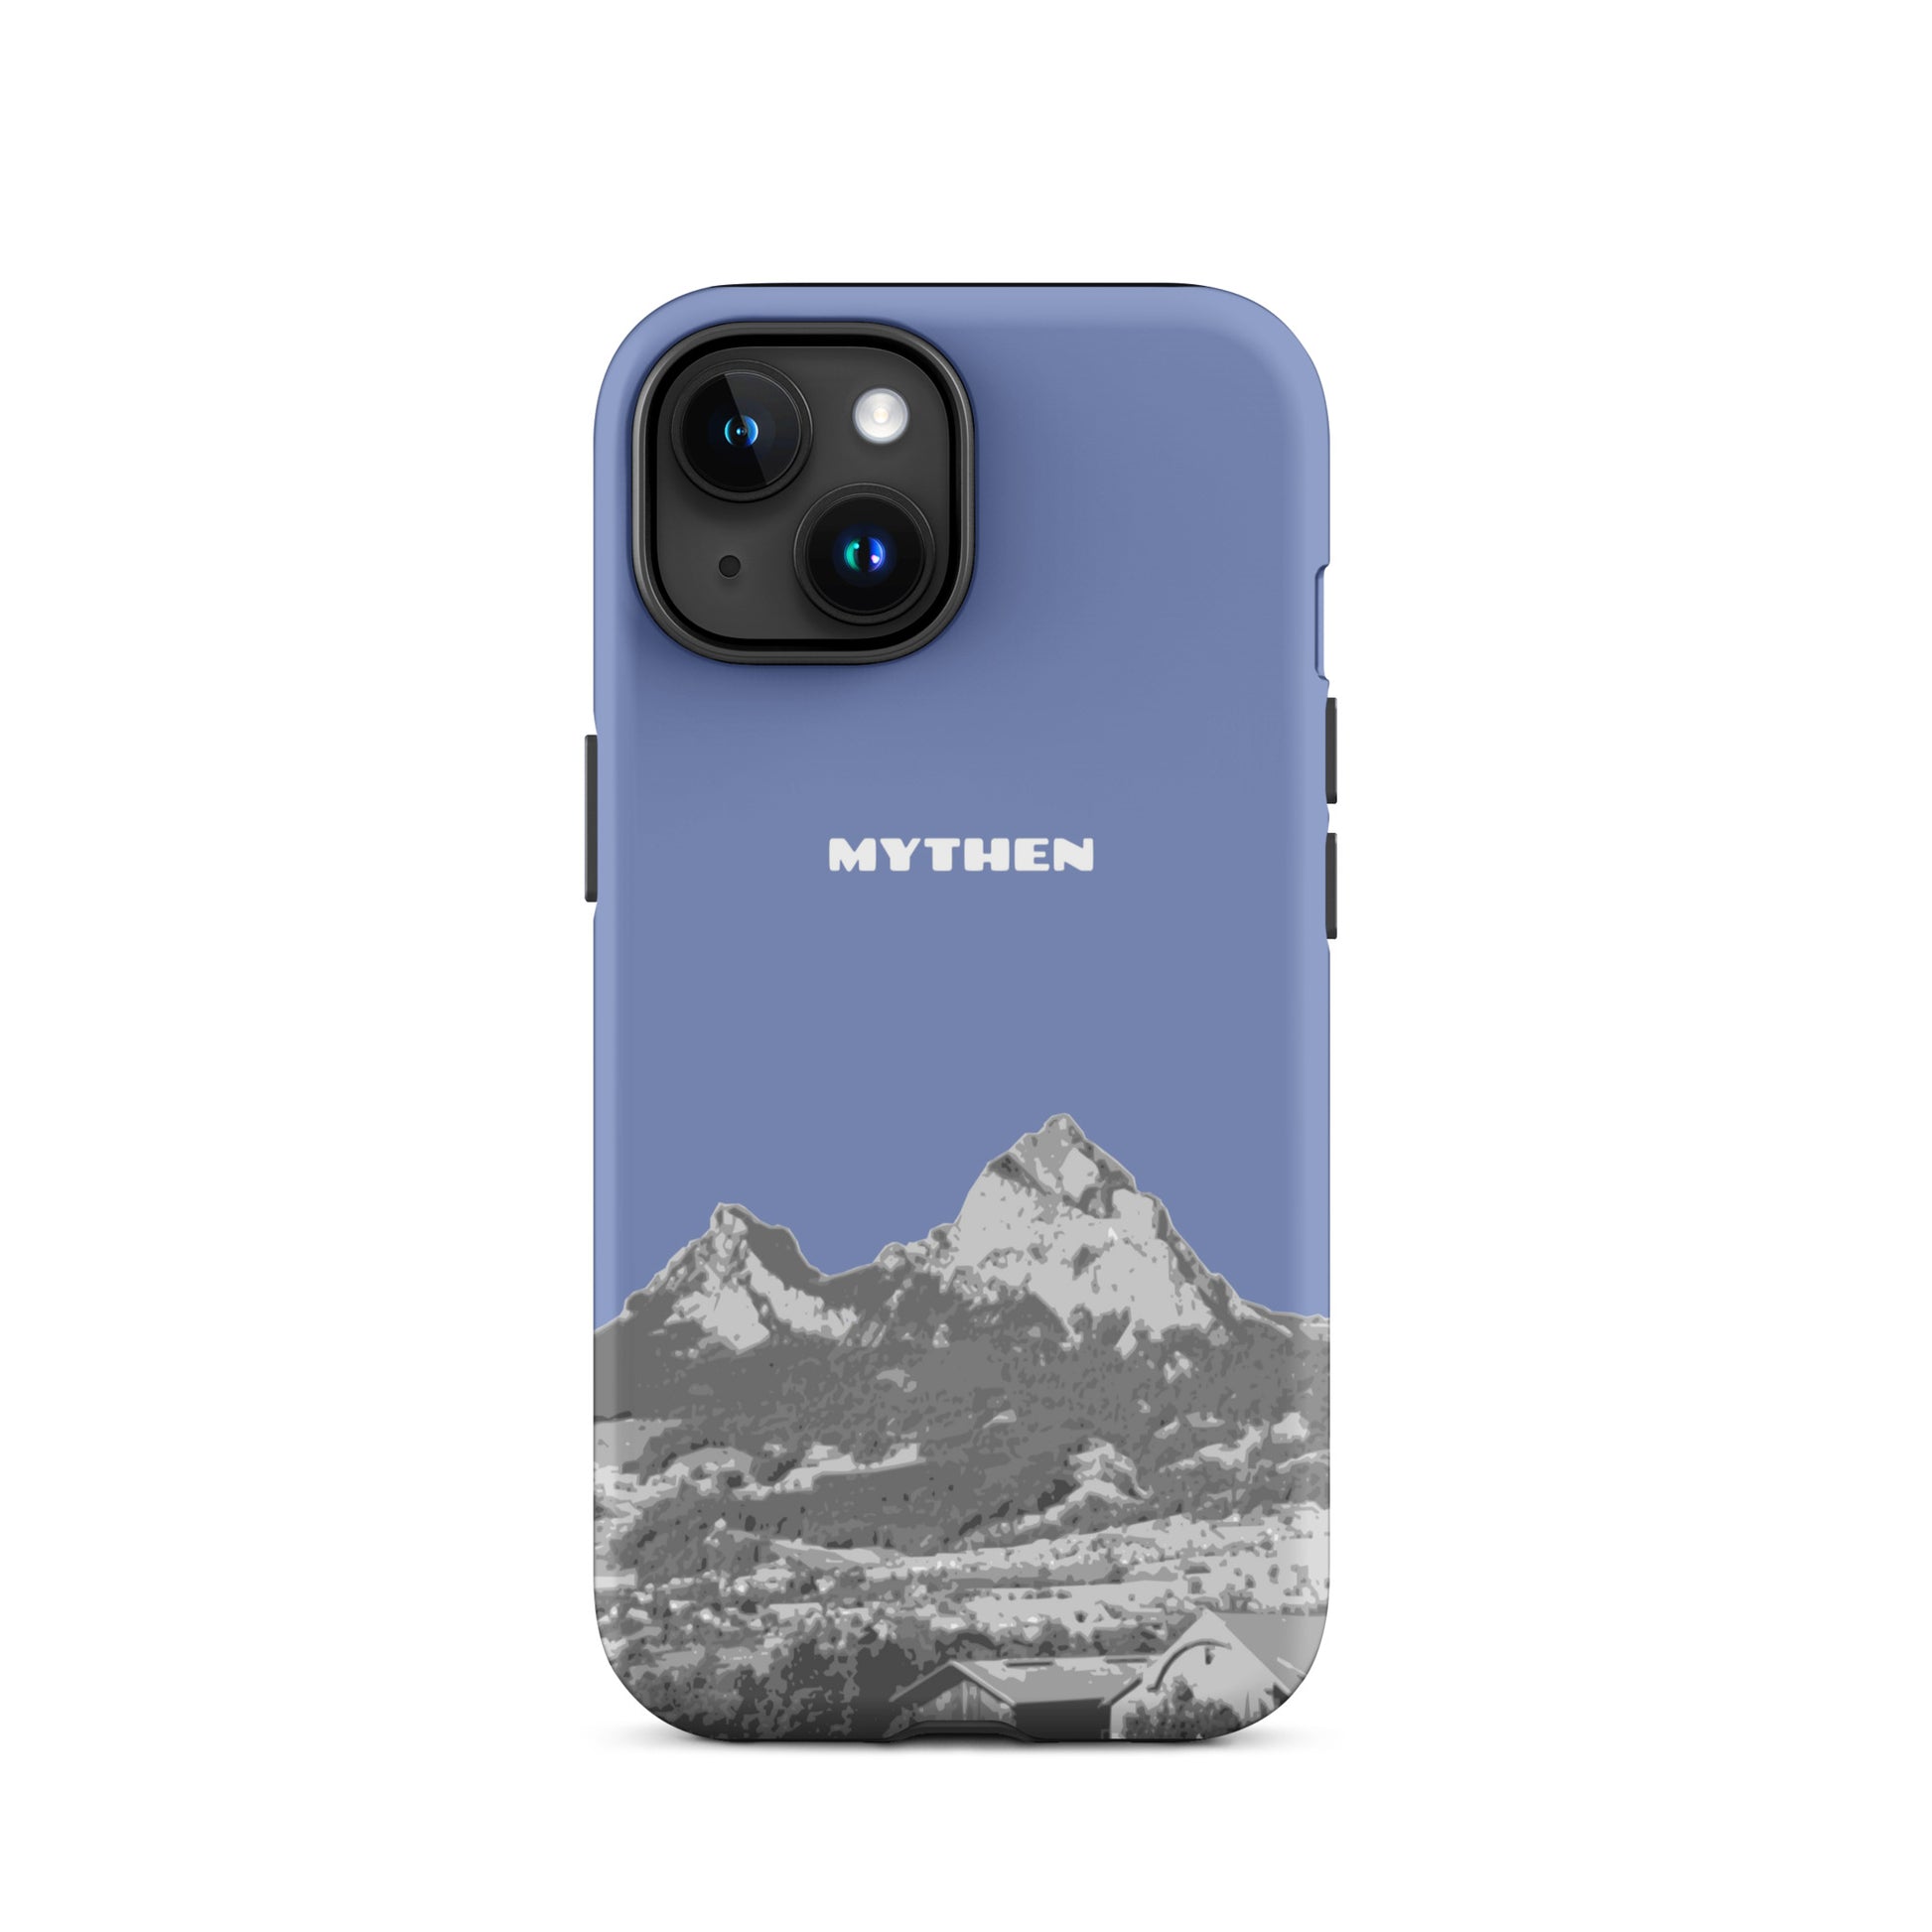 Hülle für das iPhone 15 von Apple in der Farbe Pastelllblau, dass den Grossen Mythen und den Kleinen Mythen bei Schwyz zeigt. 